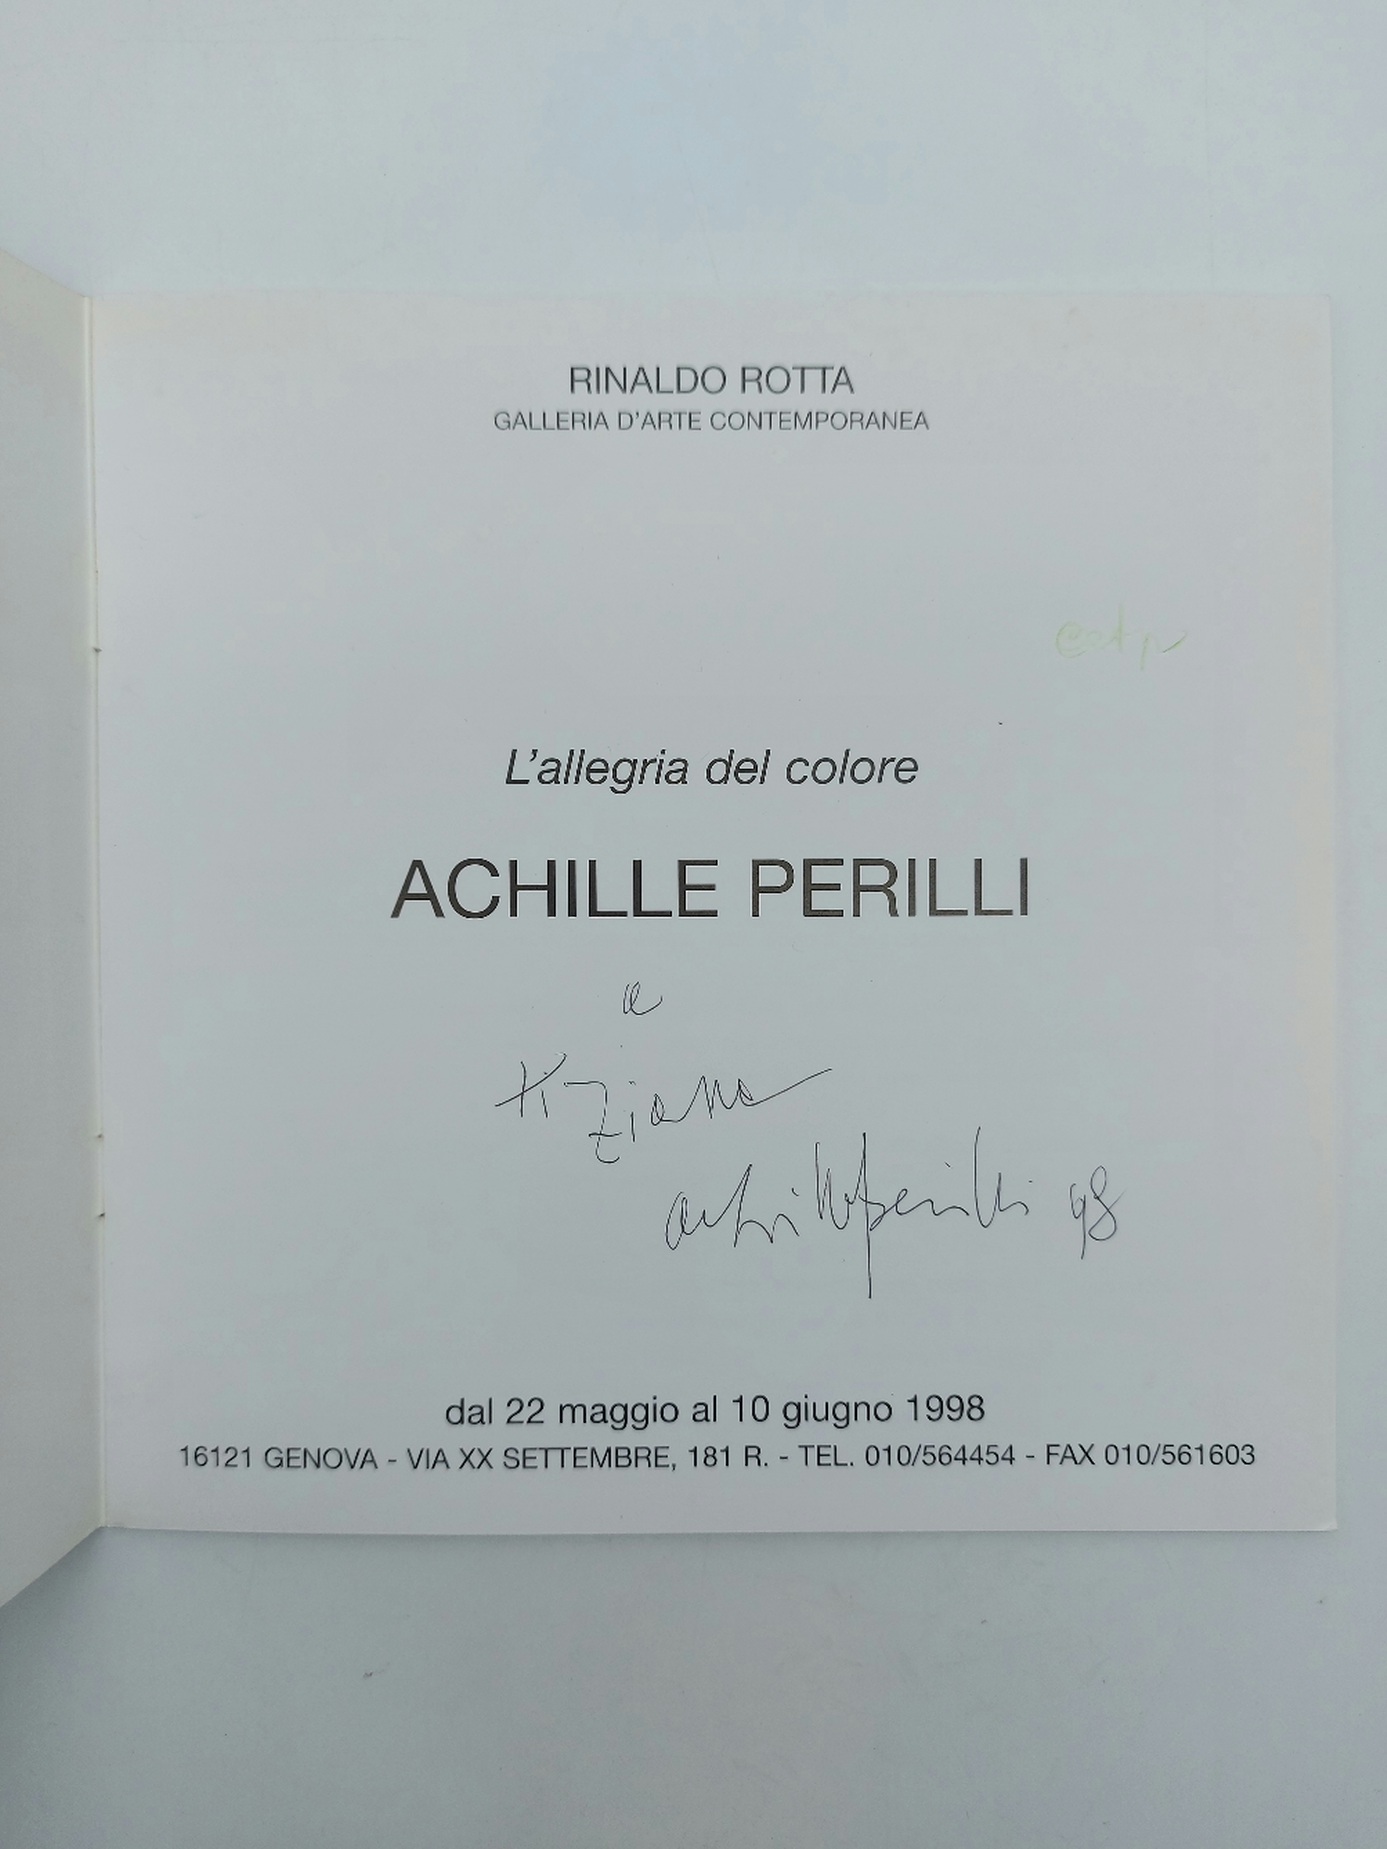 Rinaldo Riotta Galleria d'arte contemporanea. L'allegria del colore. Achille Perilli (con dedica e firma dell'artista)